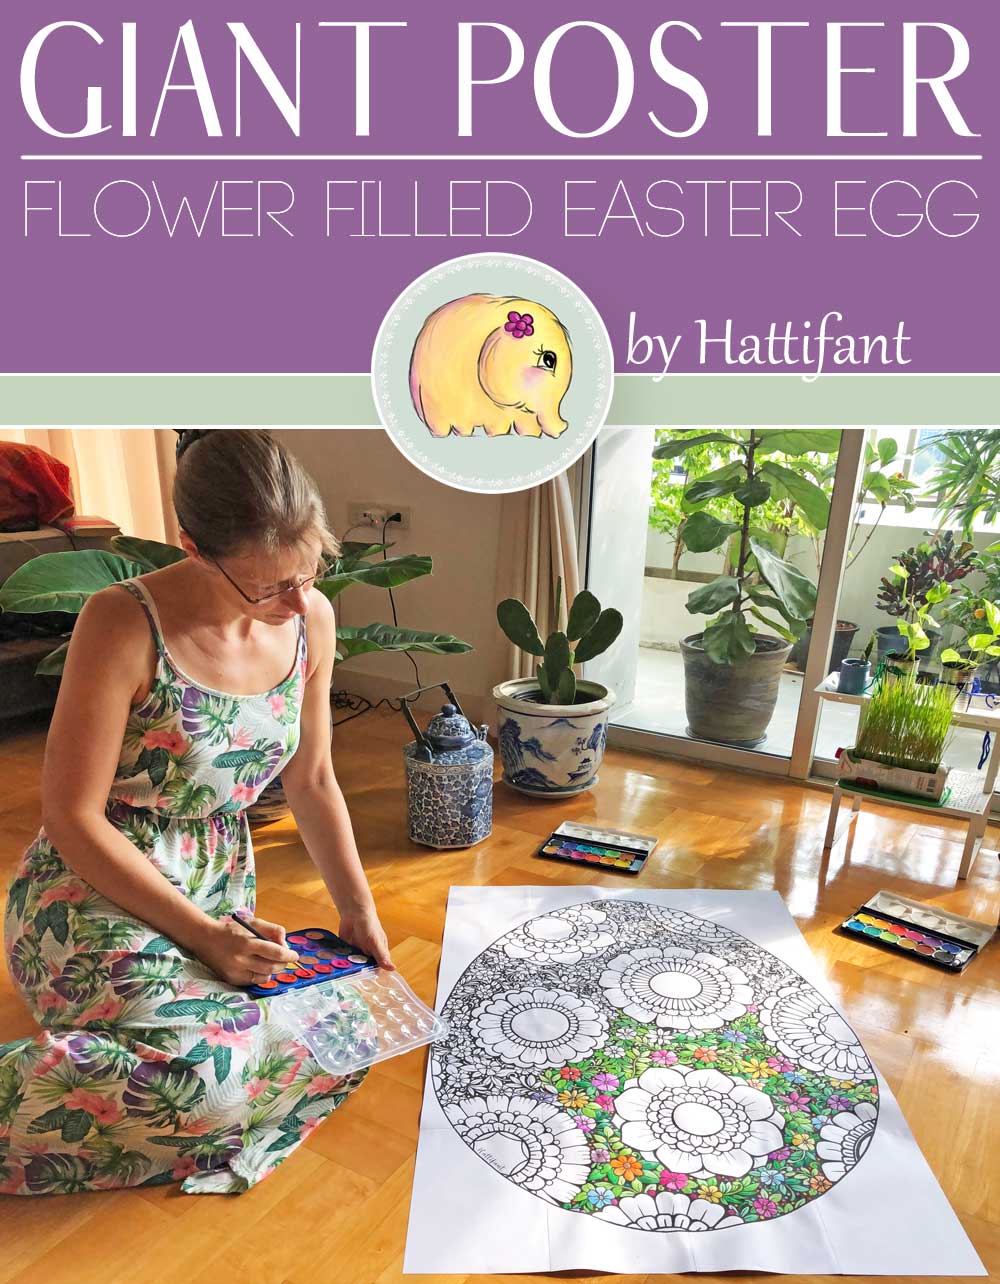 Hattifant's Giant Poster Flower filled Easter Egg to color